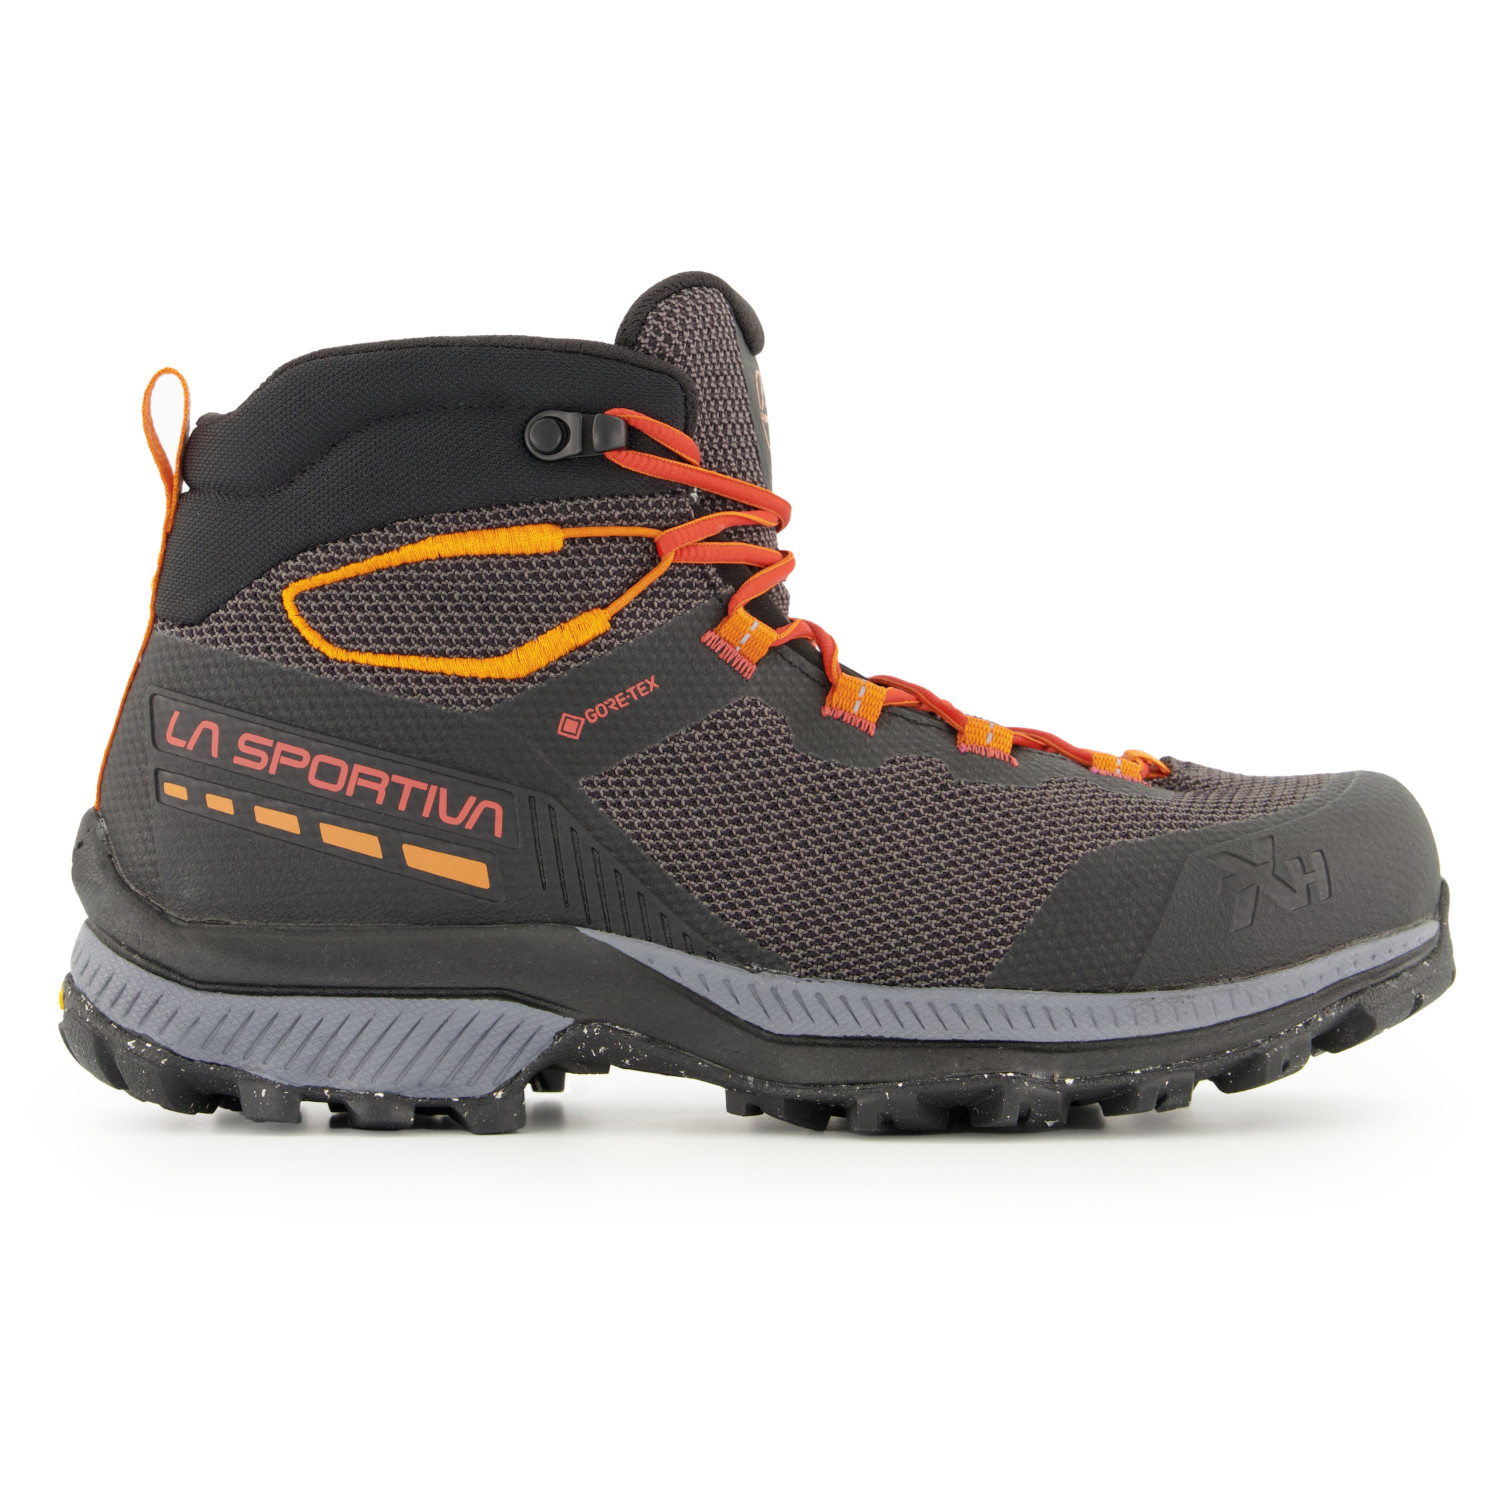 Ботинки для прогулки La Sportiva TX Hike Mid GTX, цвет Carbon/Saffron походная обувь la sportiva tx hike goretex черный